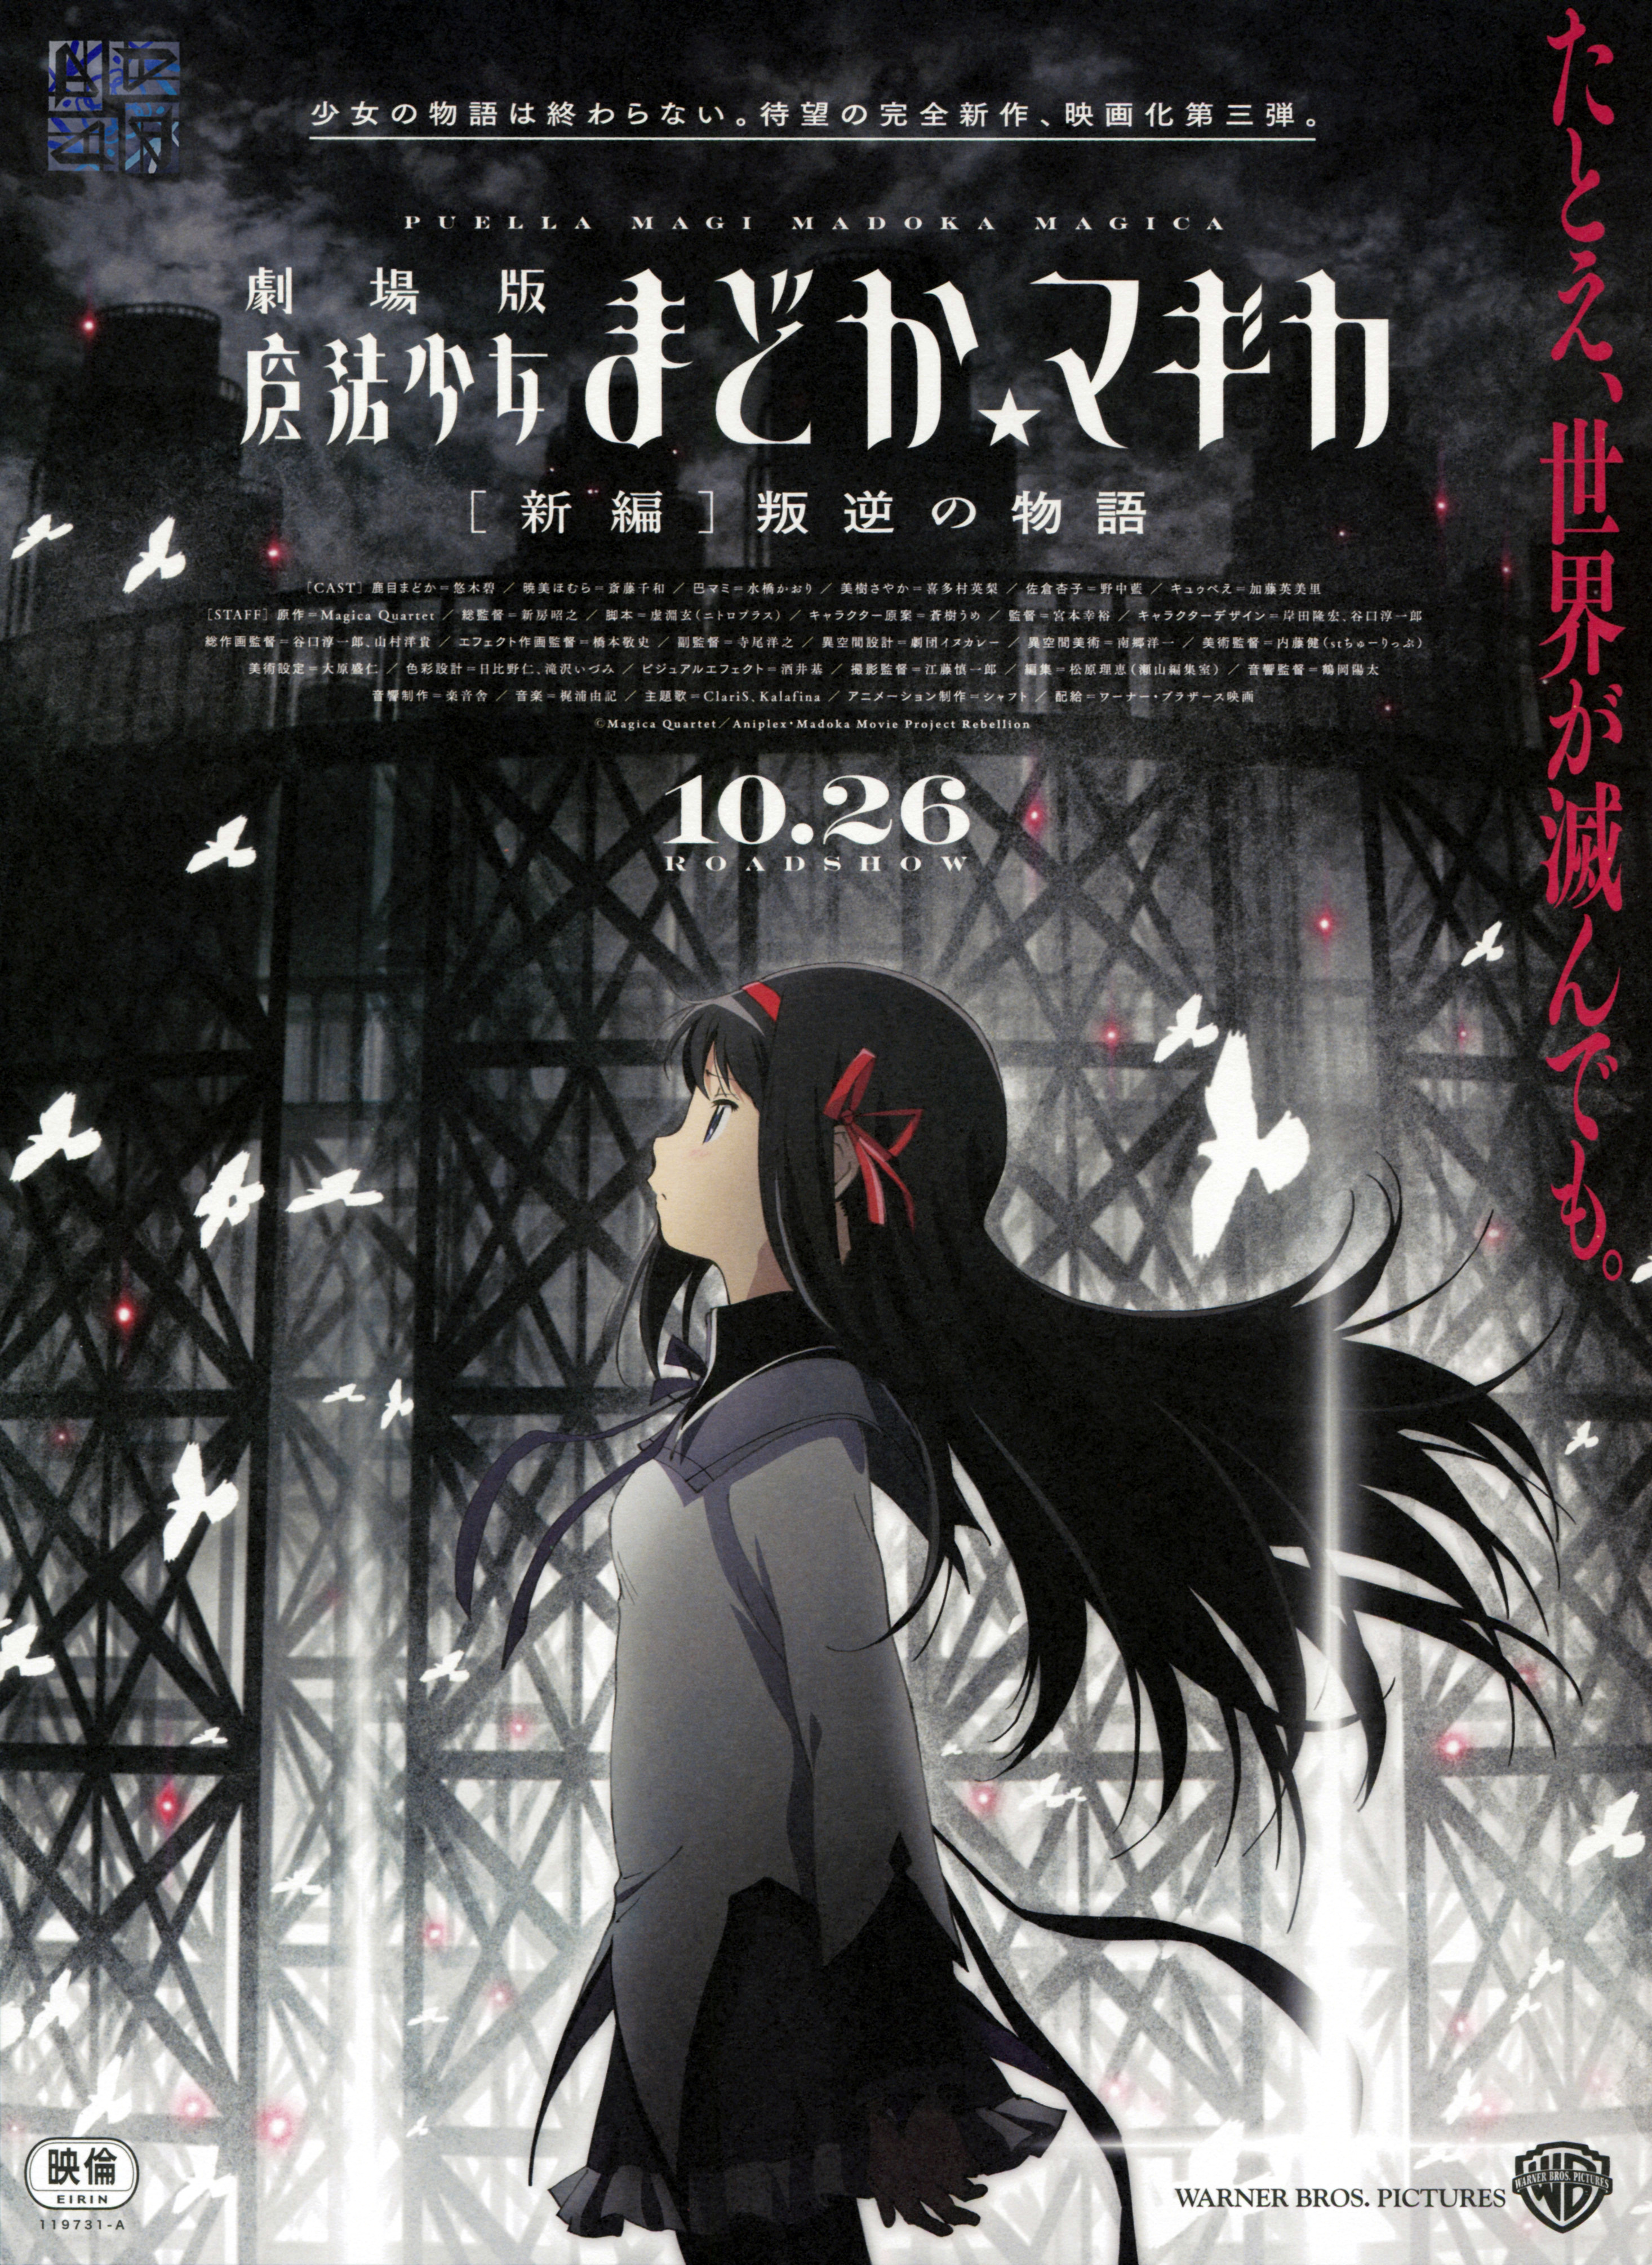 Puella Magi Madoka Magica Gaiden announced the arrival of the anime  prequel, scene0.